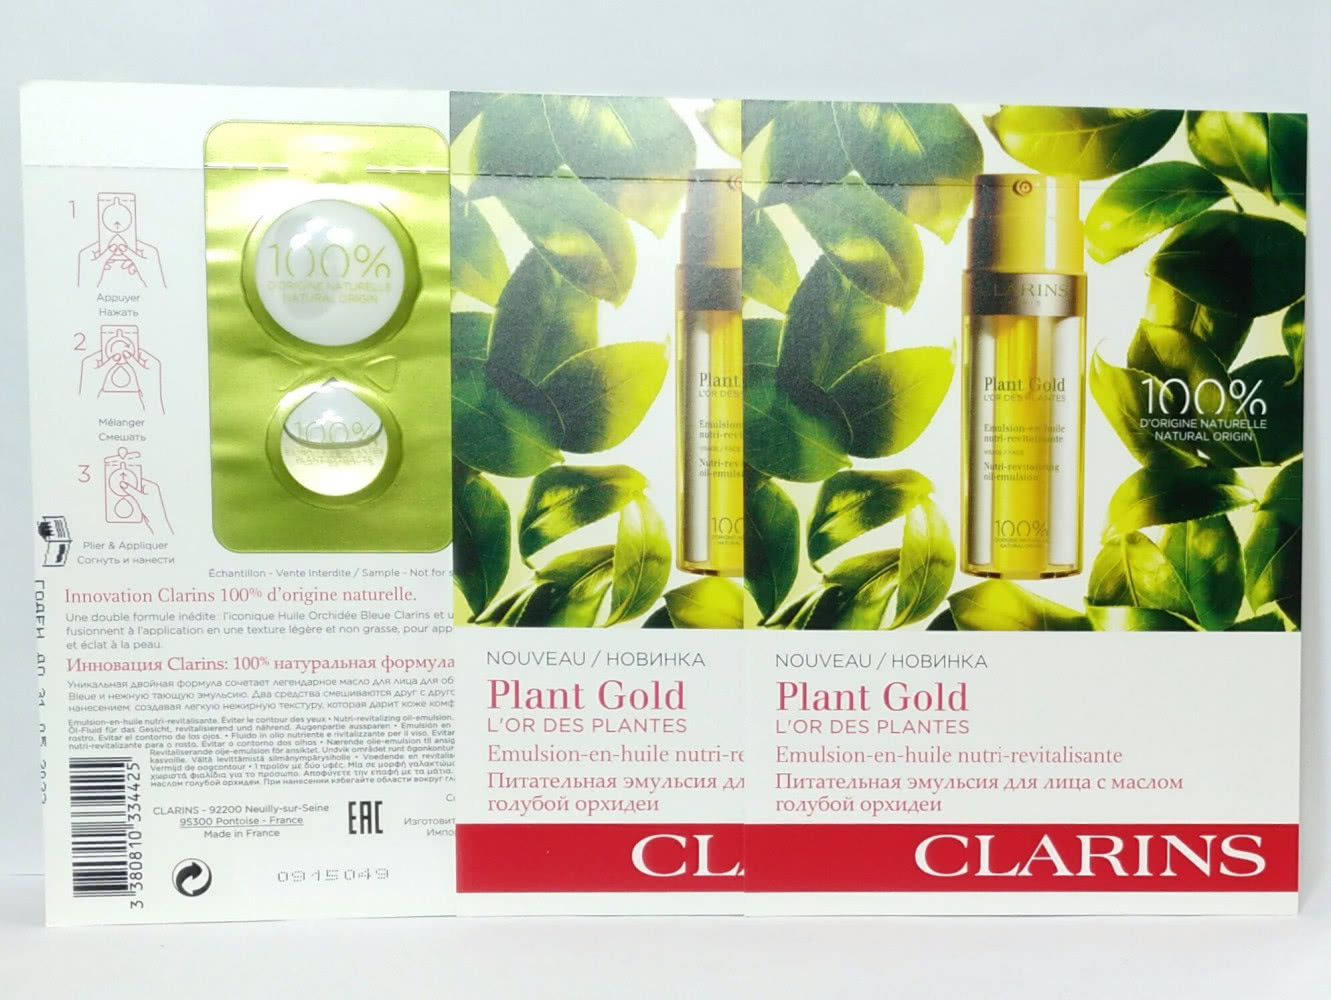 Clarins Plant Gold - L'Or des Plantes Питательная эмульсия для лица с маслом голубой орхидеи.